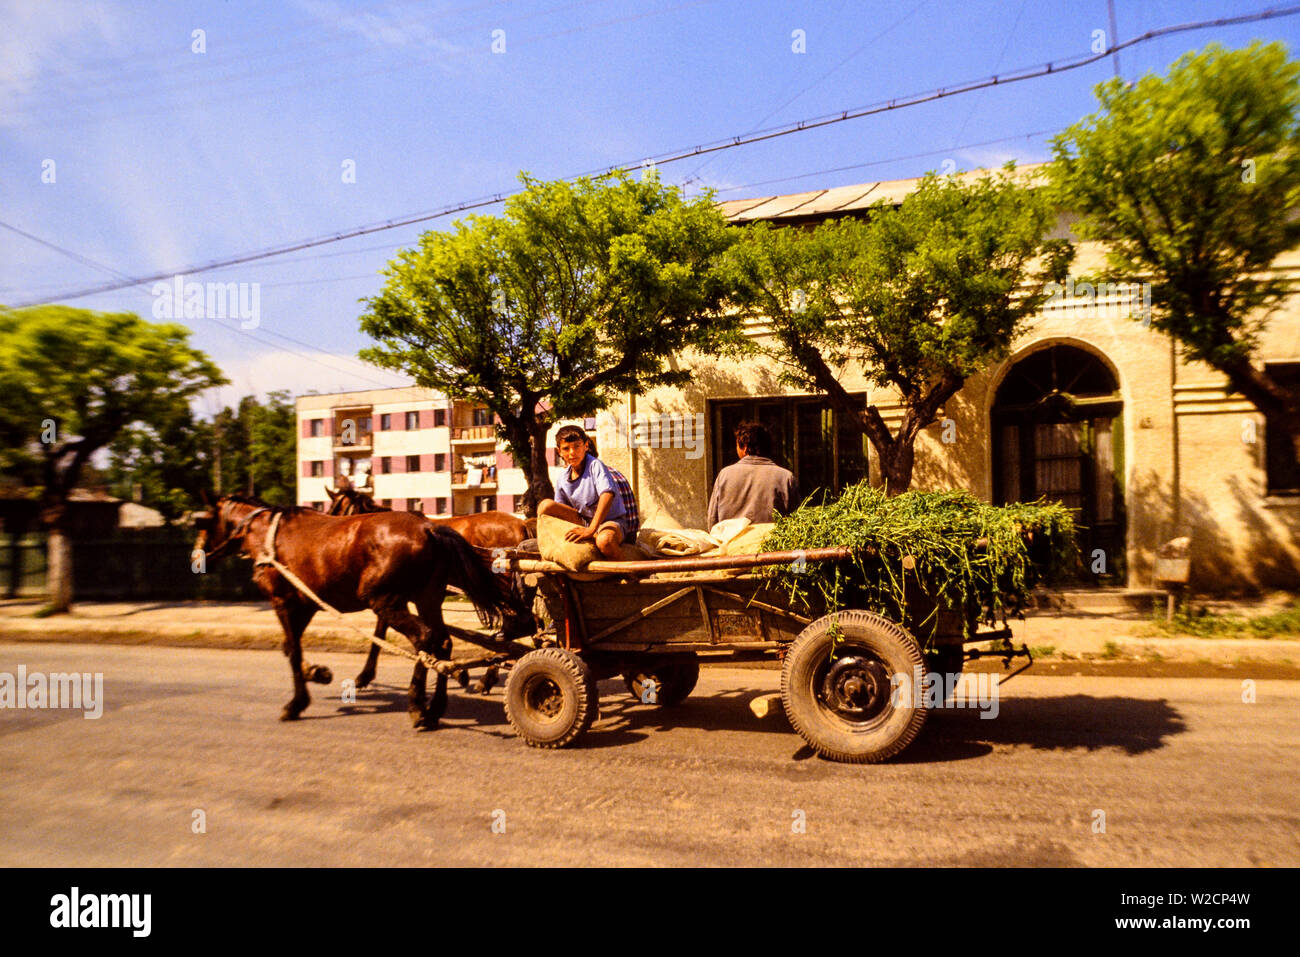 Rumänien, Mai 1990. Ländliche Szene. Ein Junge starrt aus einem Wagen beladen mit Futter und gezogen von zwei Pferden. Foto: © Simon Grosset. Archiv: Bild von einem ursprünglichen Transparenz digitalisiert. Stockfoto